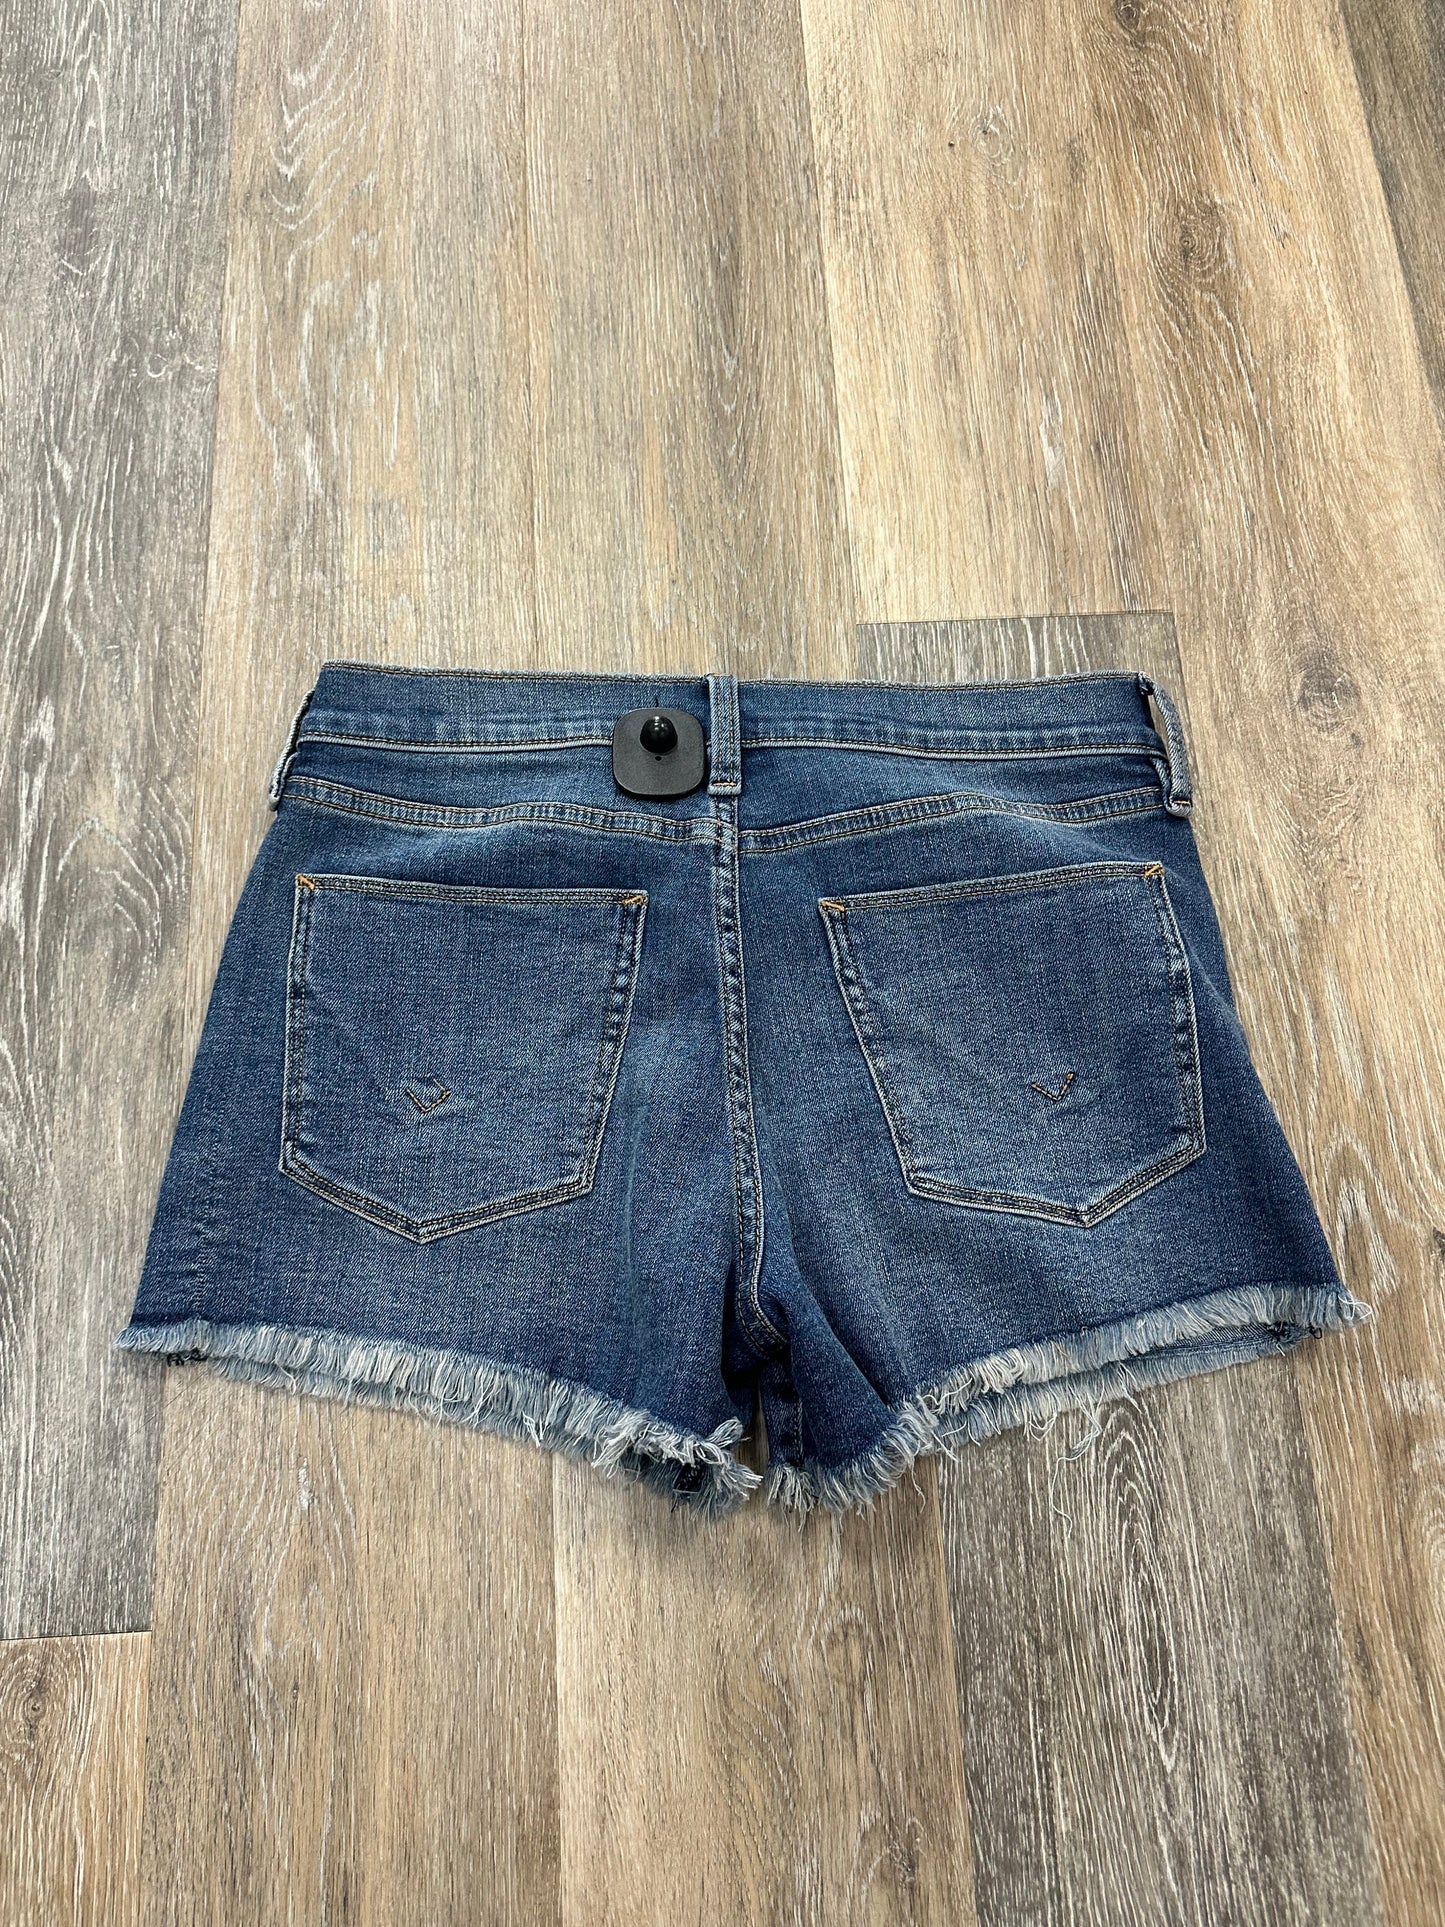 Blue Denim Shorts Designer Hudson, Size 4/27